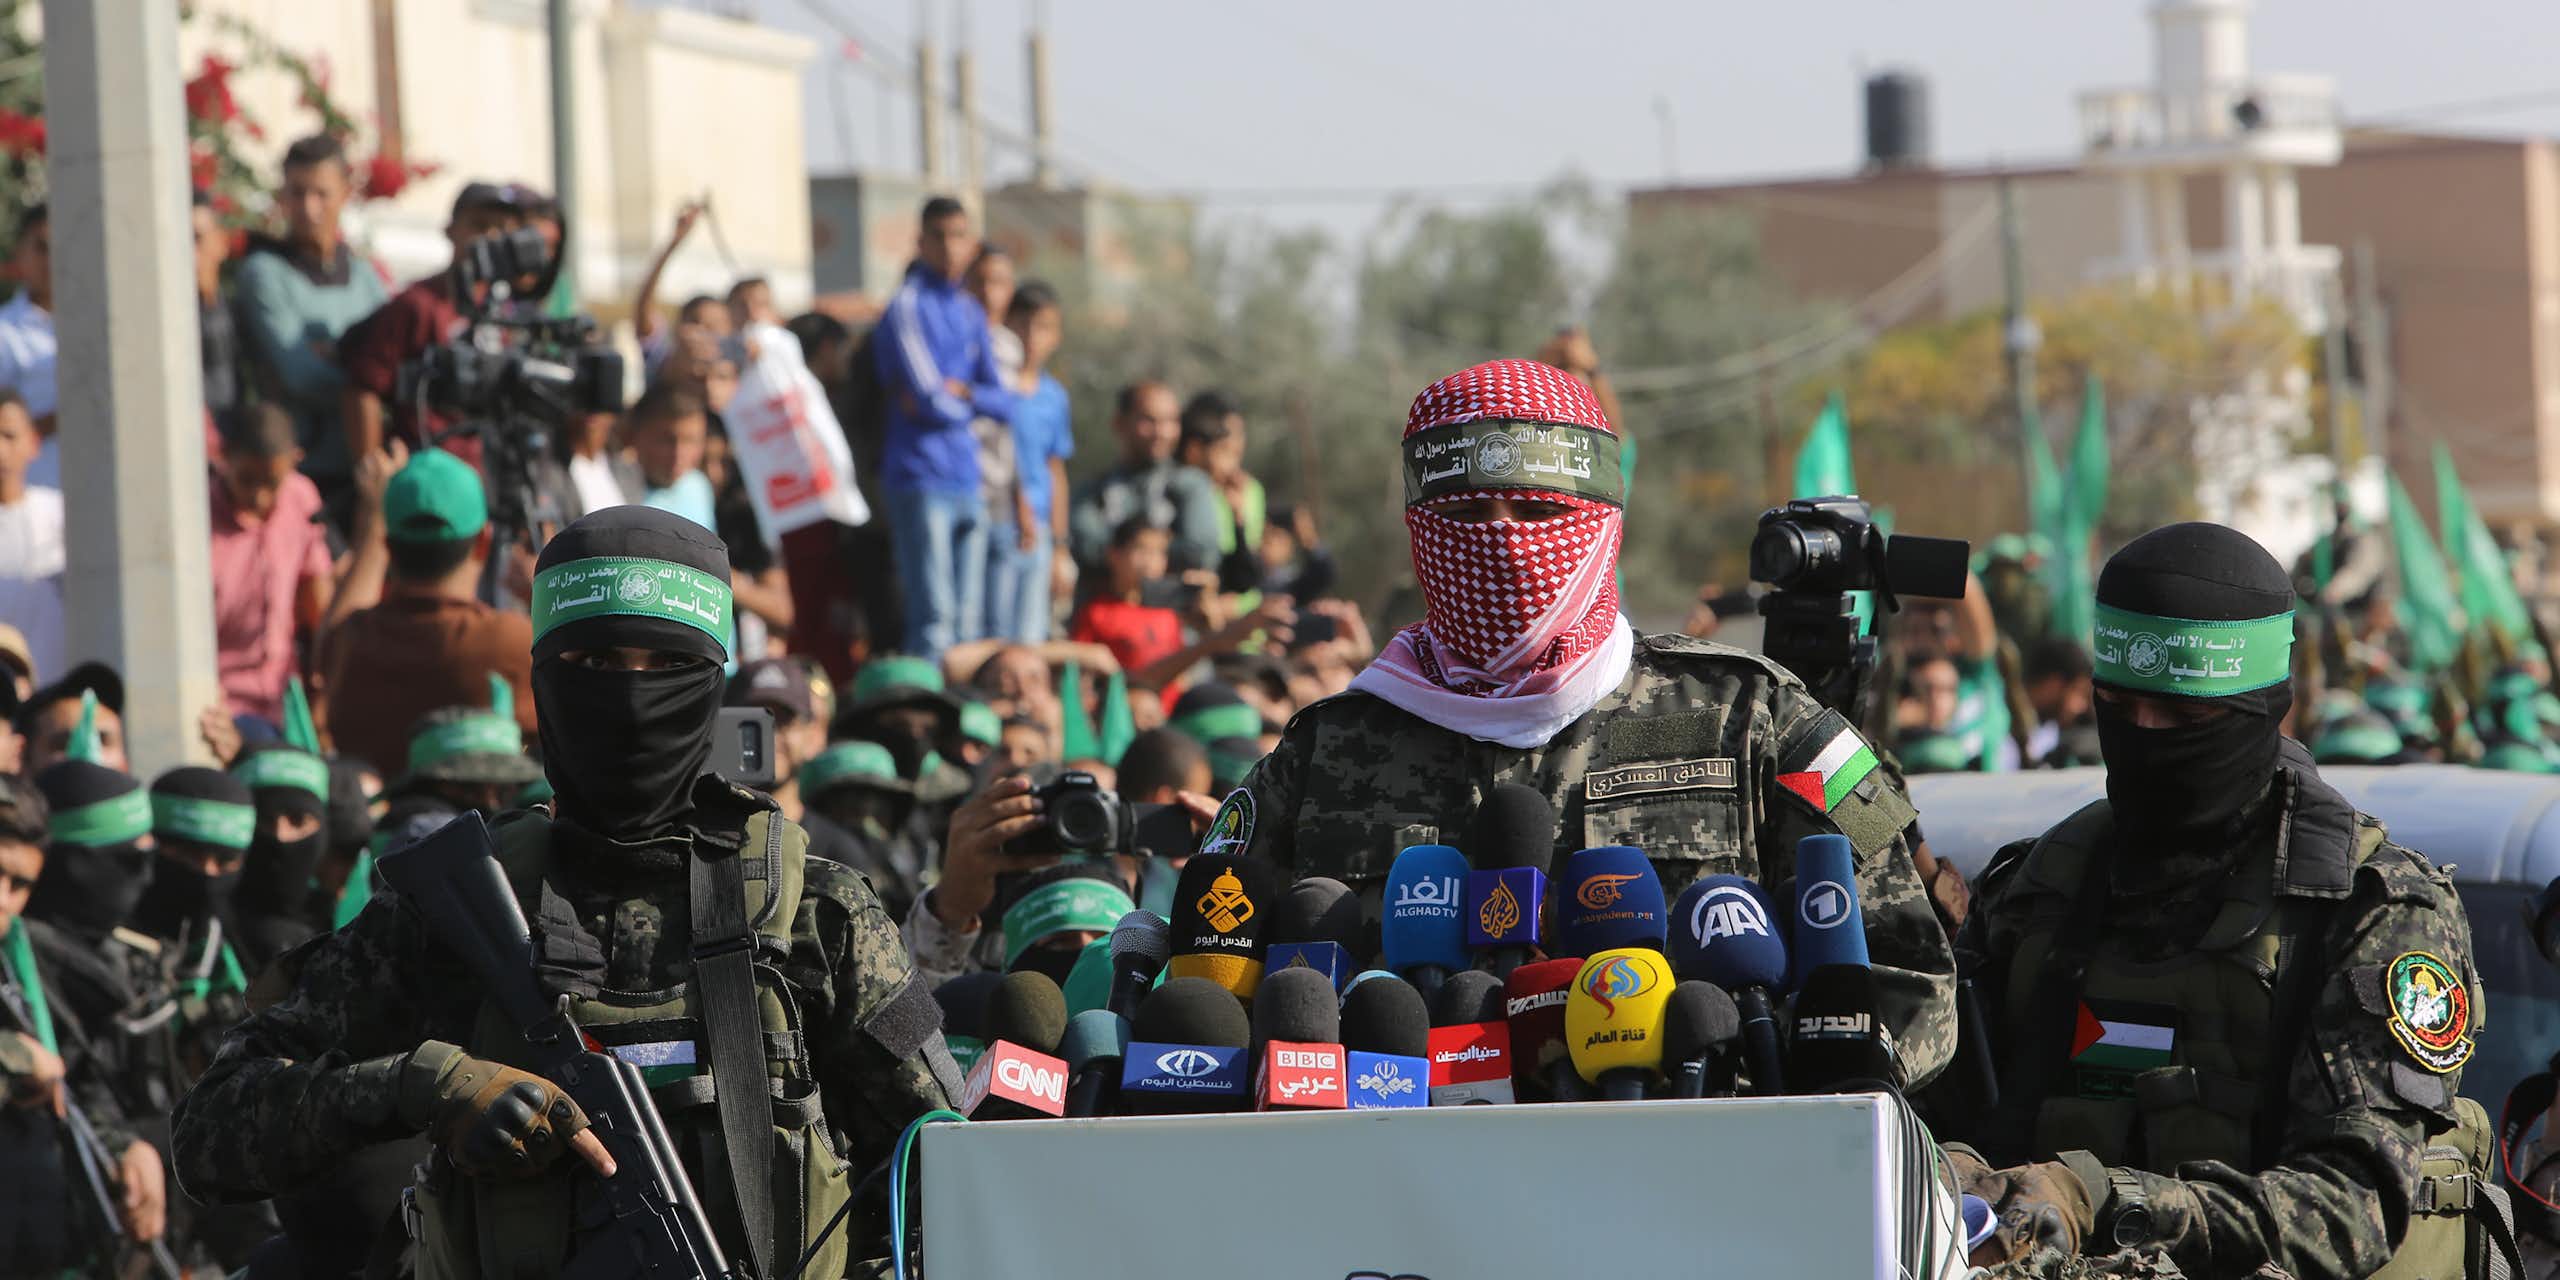 Des hommes masqués aux couleurs du Hamas prononcent un discours devant des micros. Derrière eux, des civils sont rassemblés.